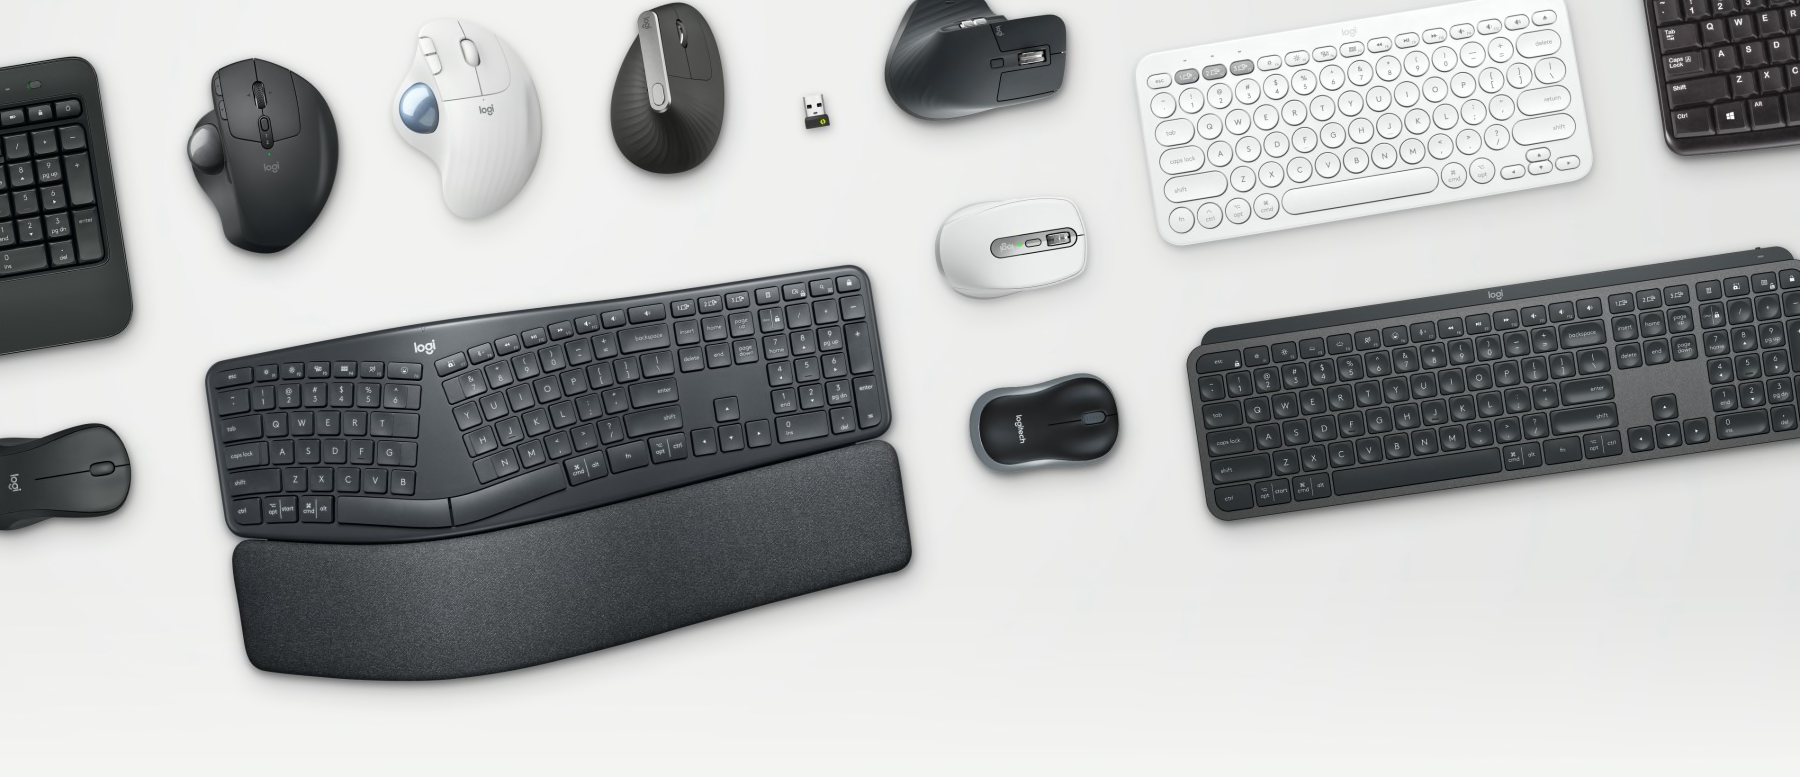 Perangkat bisnis - Mouse dan Keyboard Ergo di atas meja